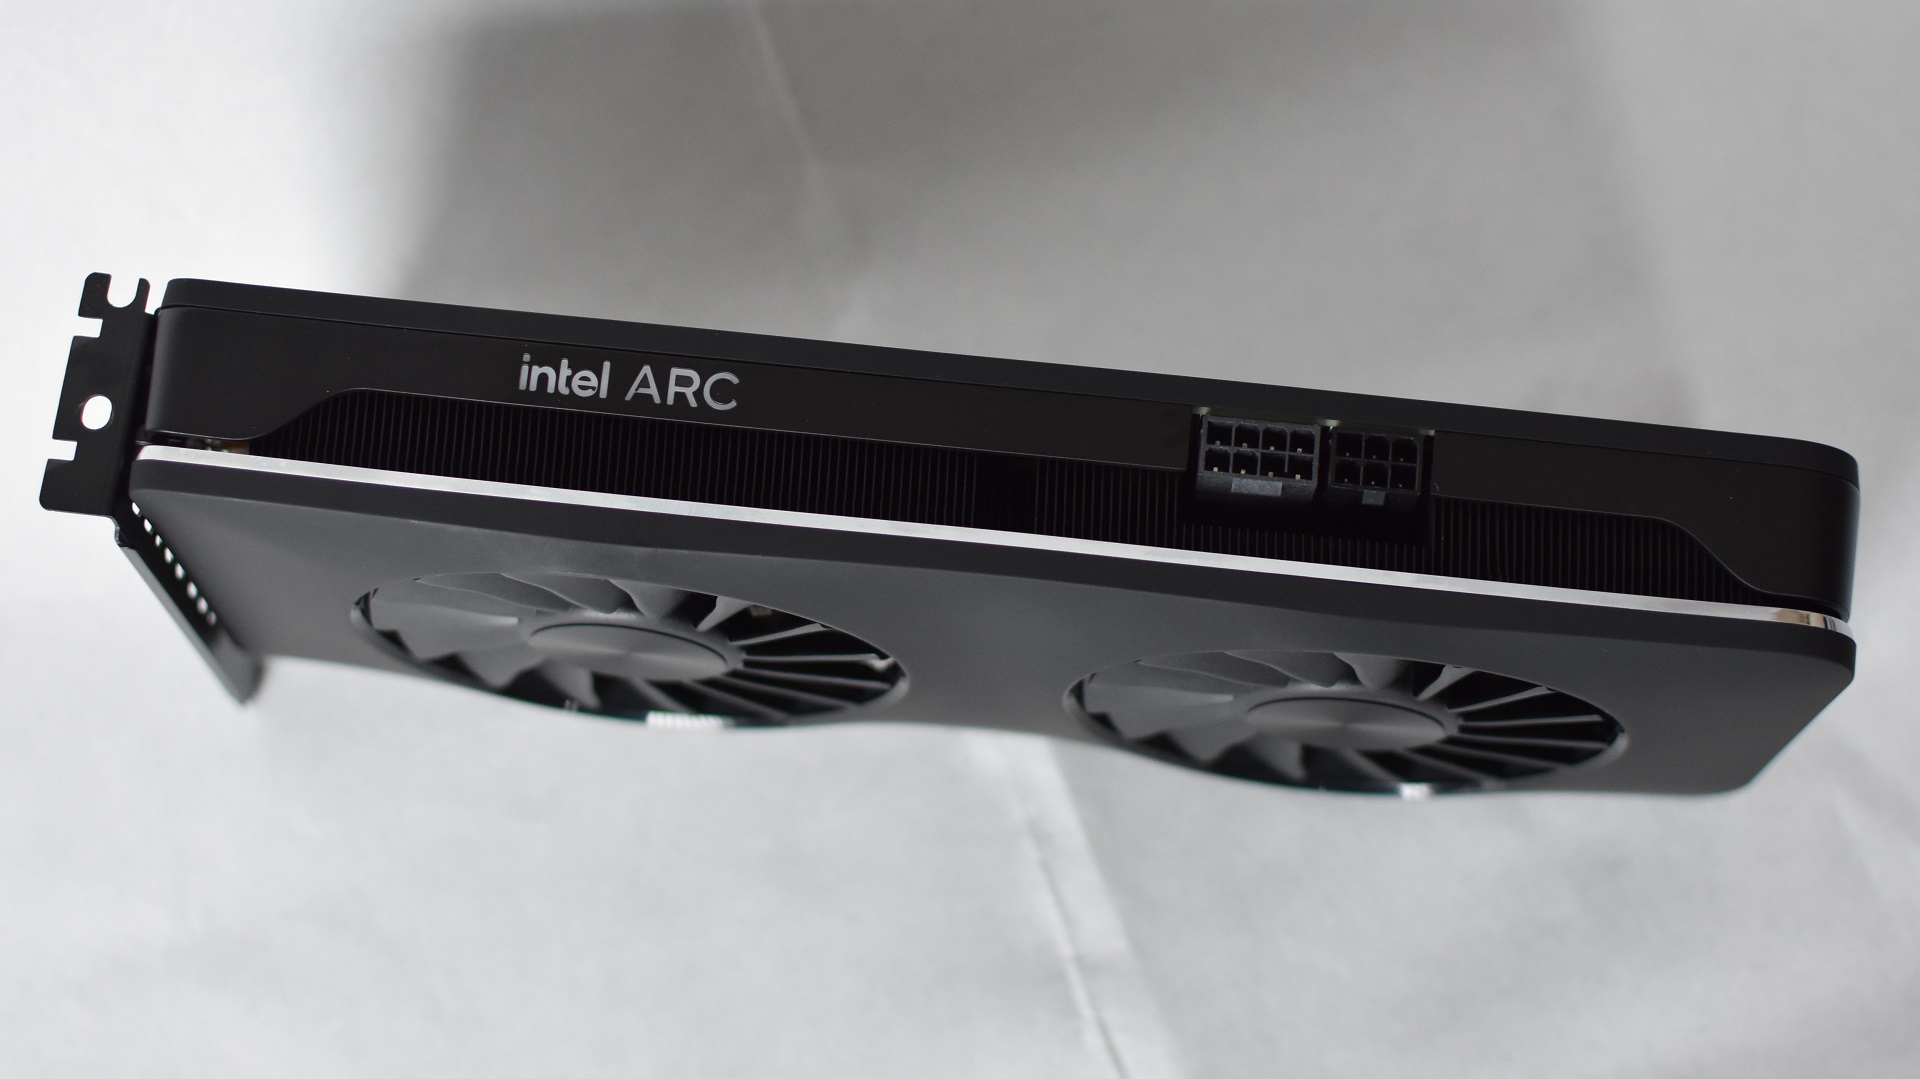 Una vista lateral de la tarjeta gráfica Intel Arc A750 Limited Edition, que muestra sus conectores de alimentación.